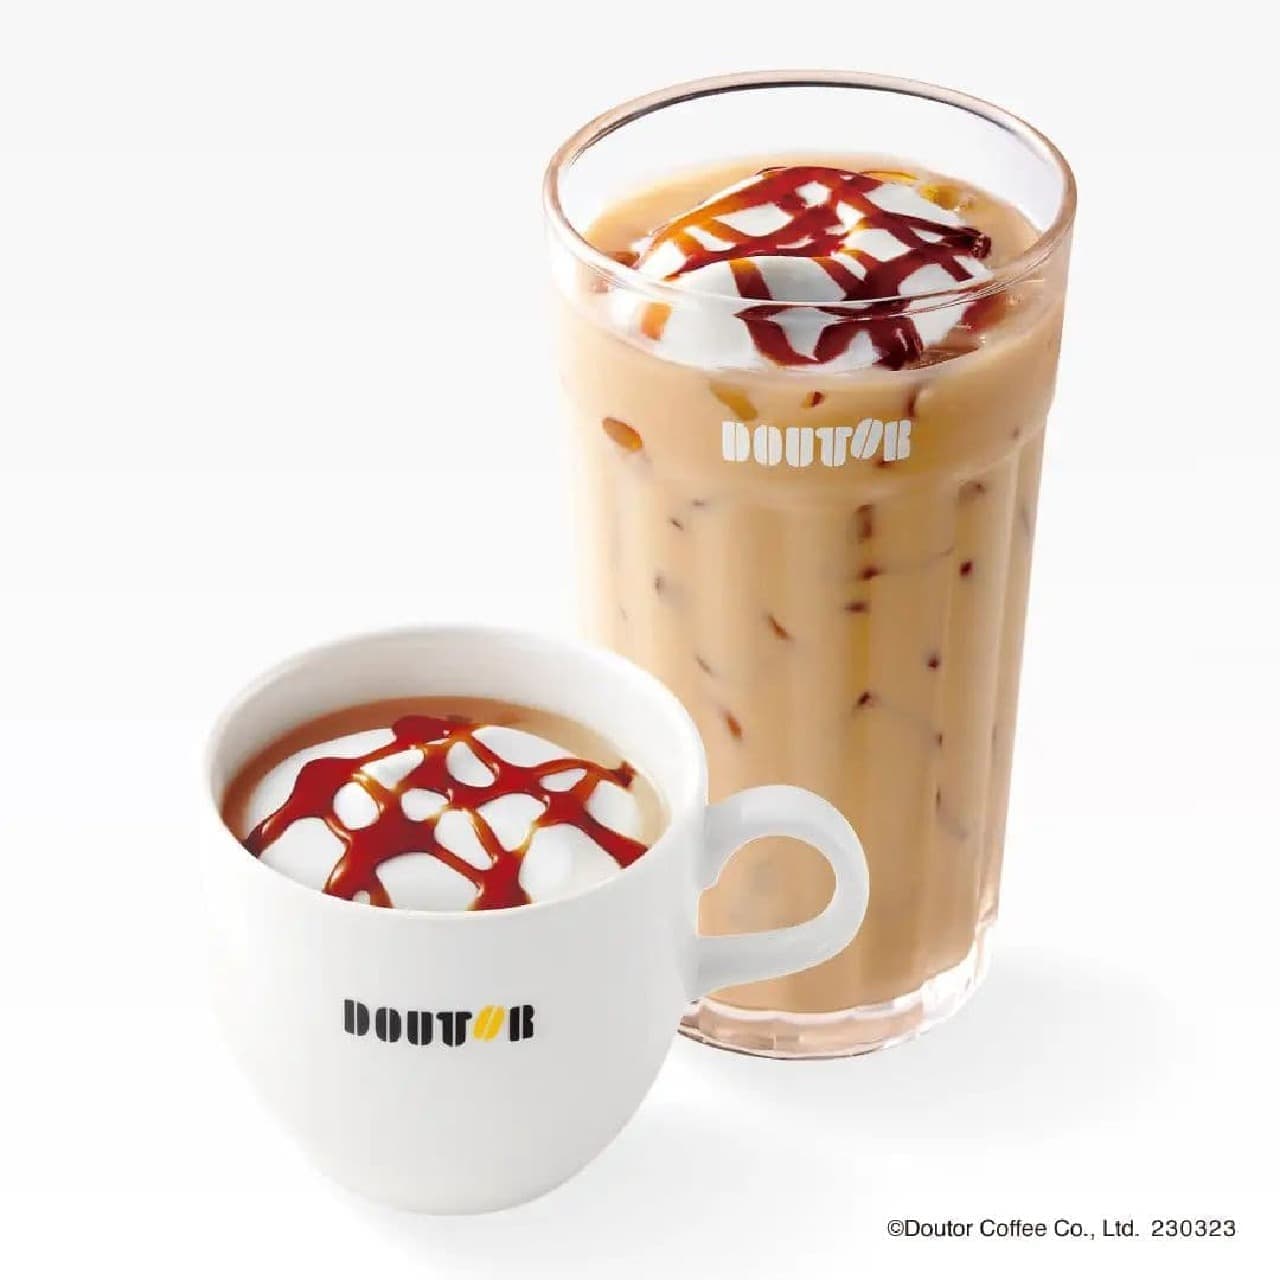 Doutor Coffee Shop "Okinawa Brown Sugar Latte